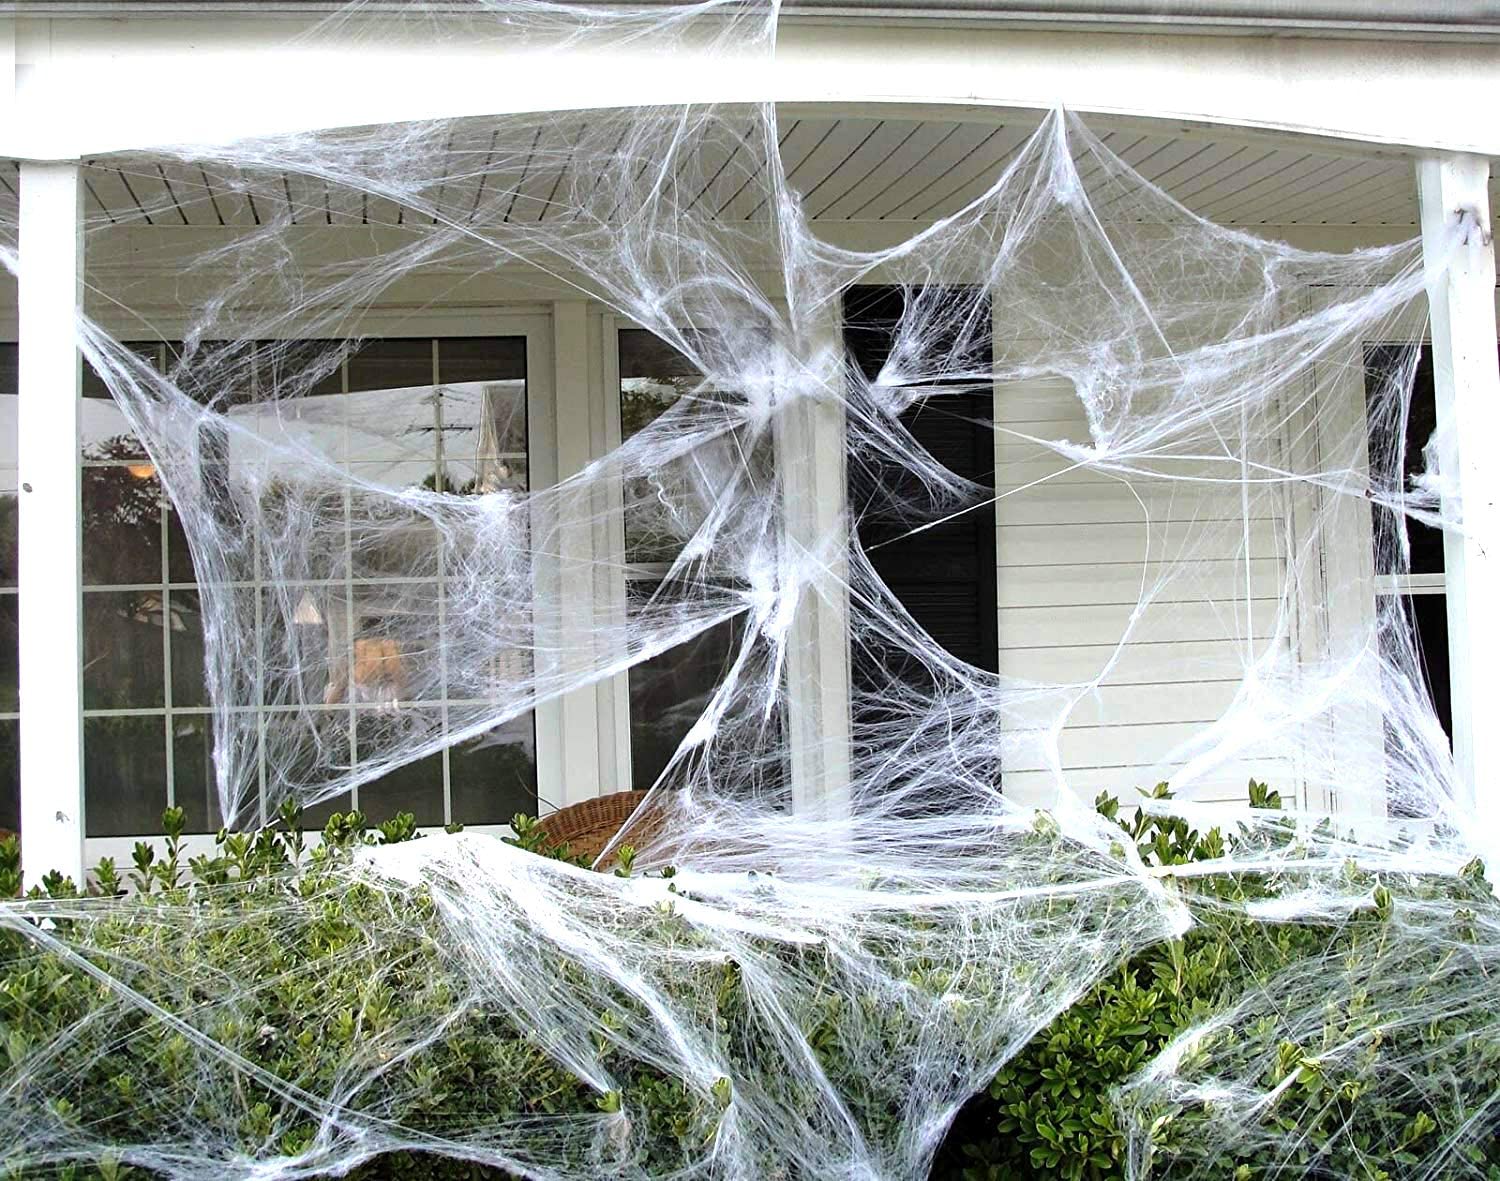 Spider webs - Telaraña Gigante  (74 metros)